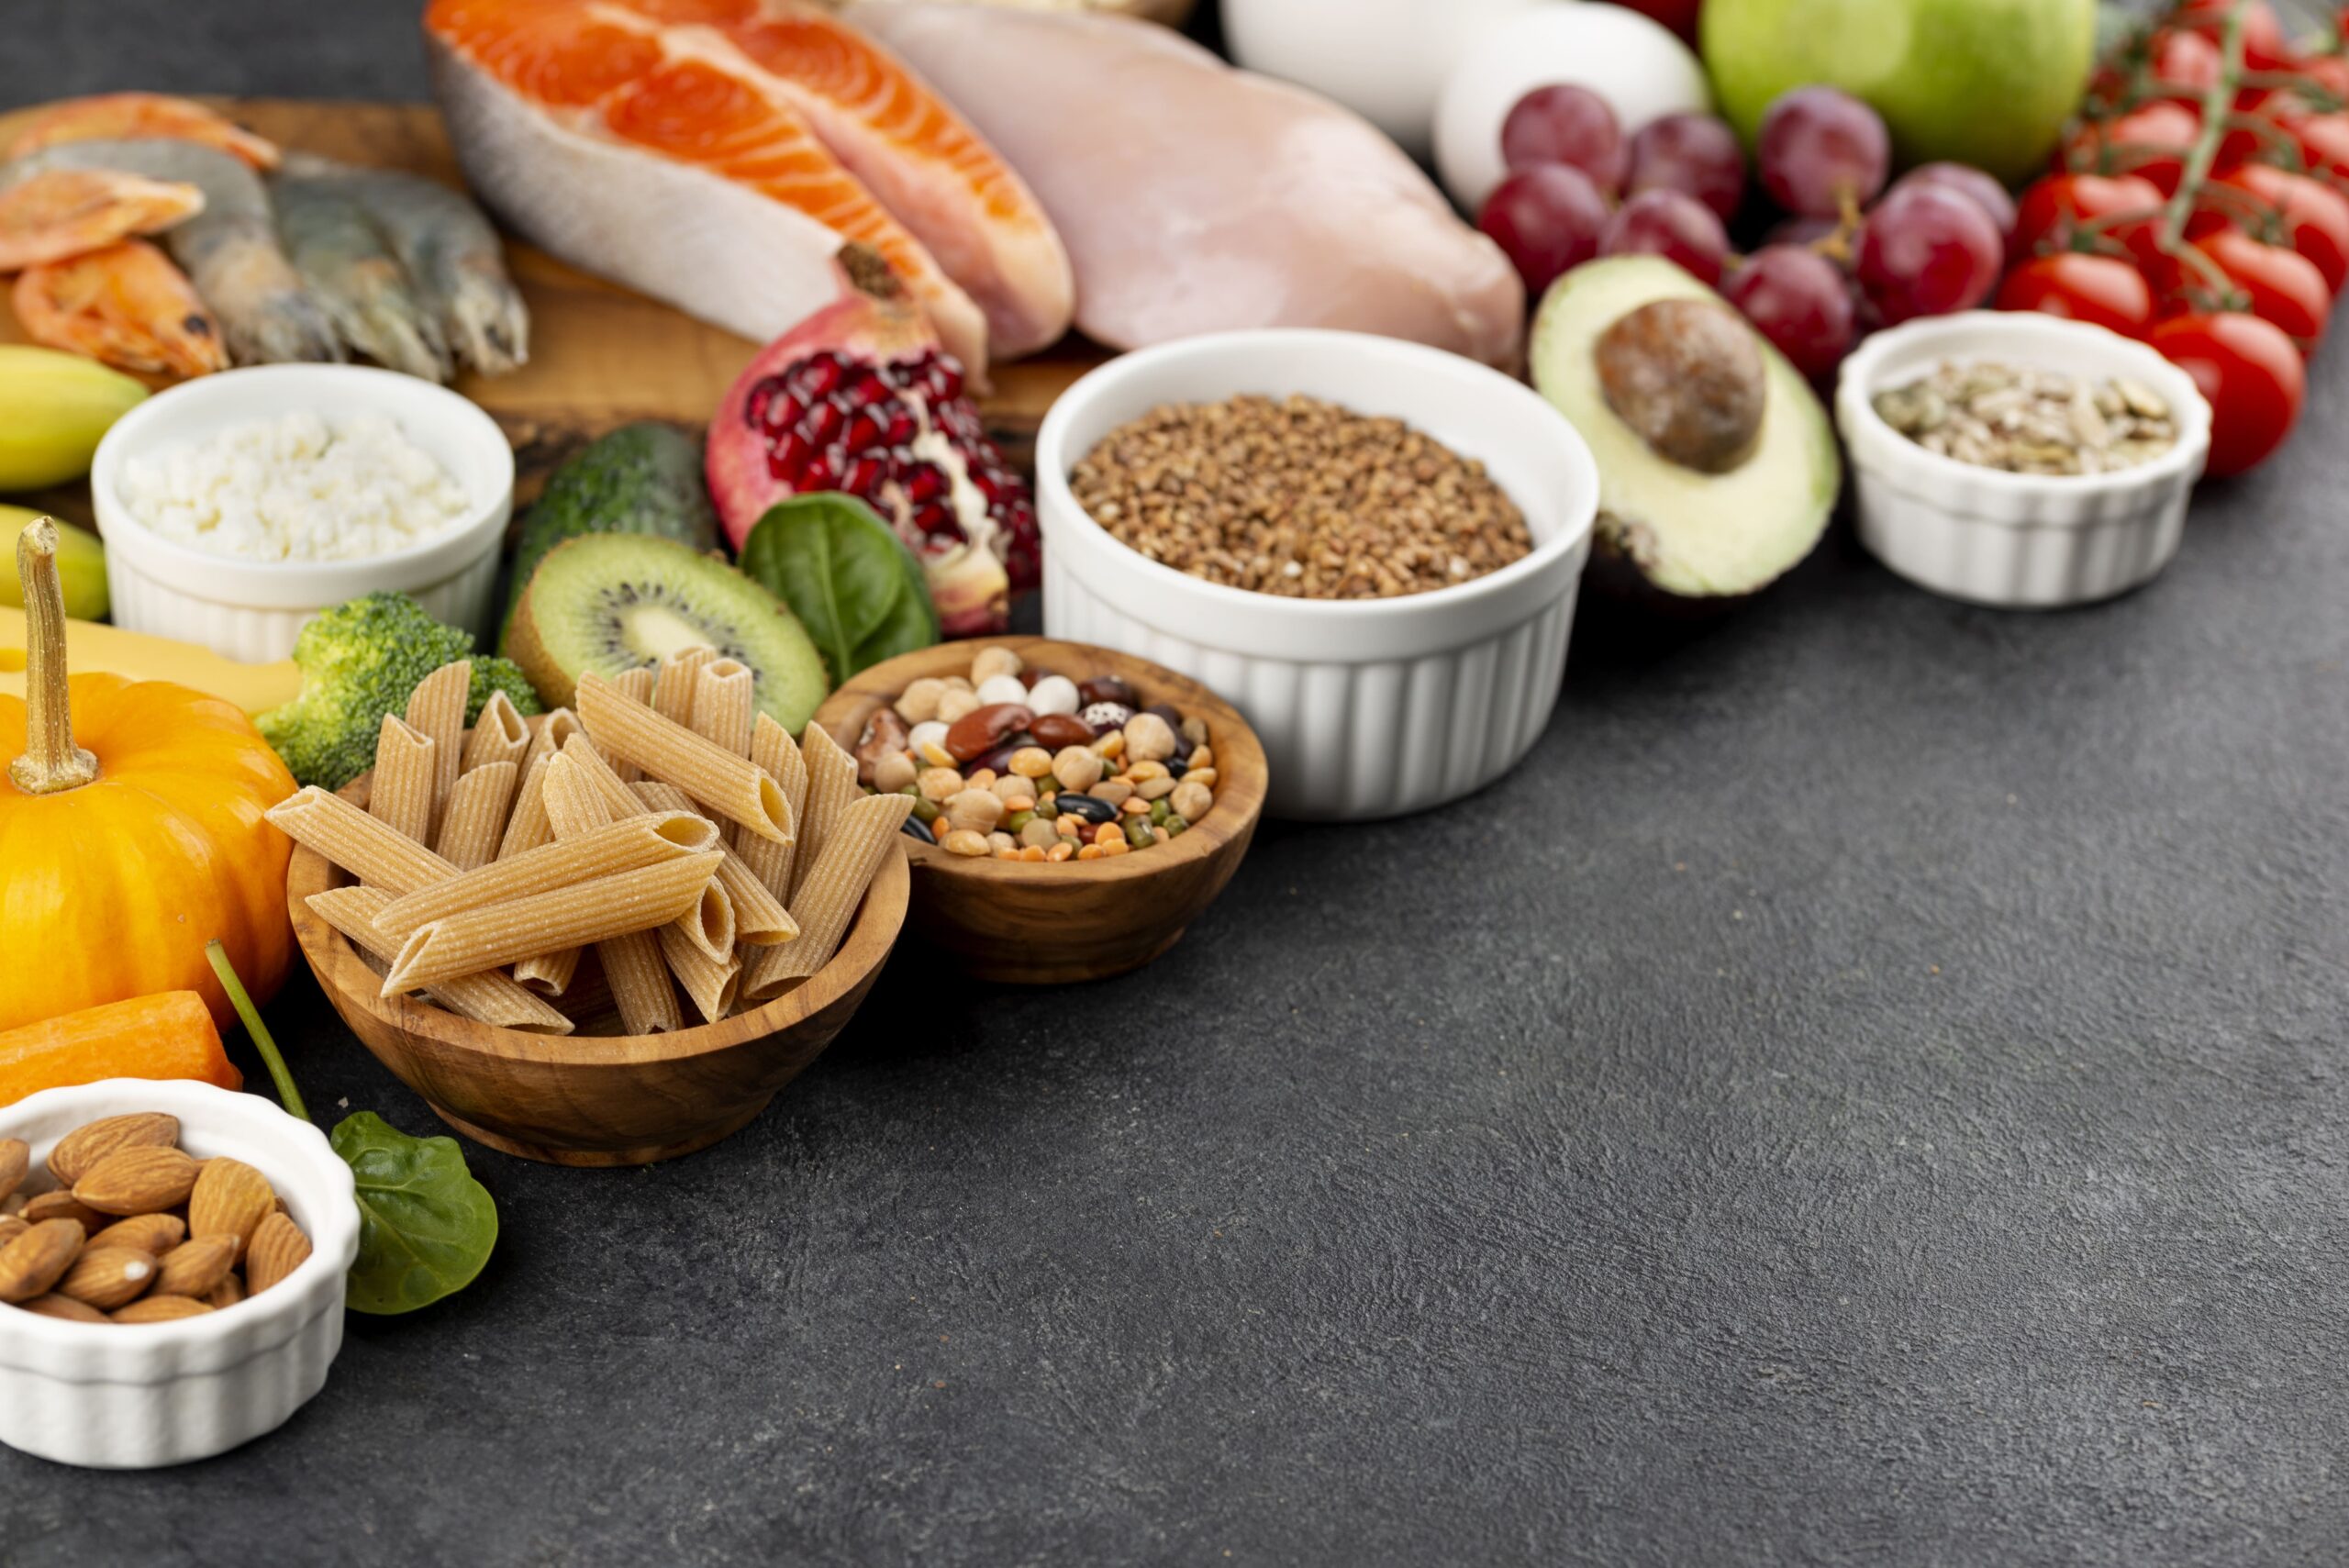 Una dieta rica en fibra ayuda a mantener una buena salud intestinal.